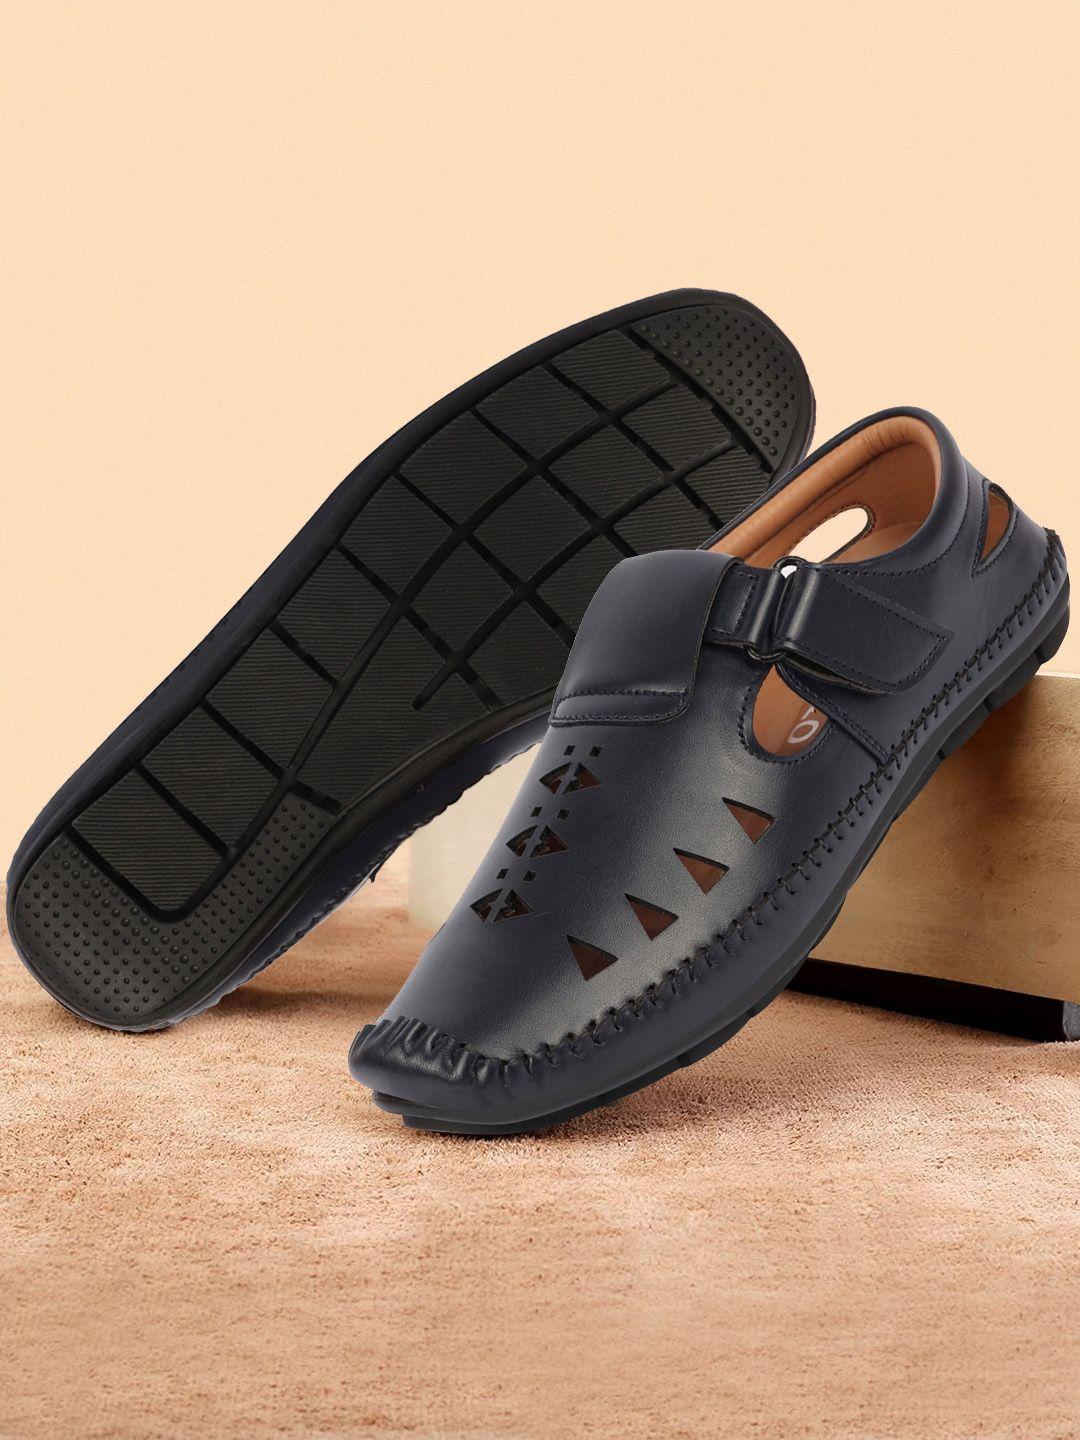 fausto-men-laser-cut-shoe-style-sandals